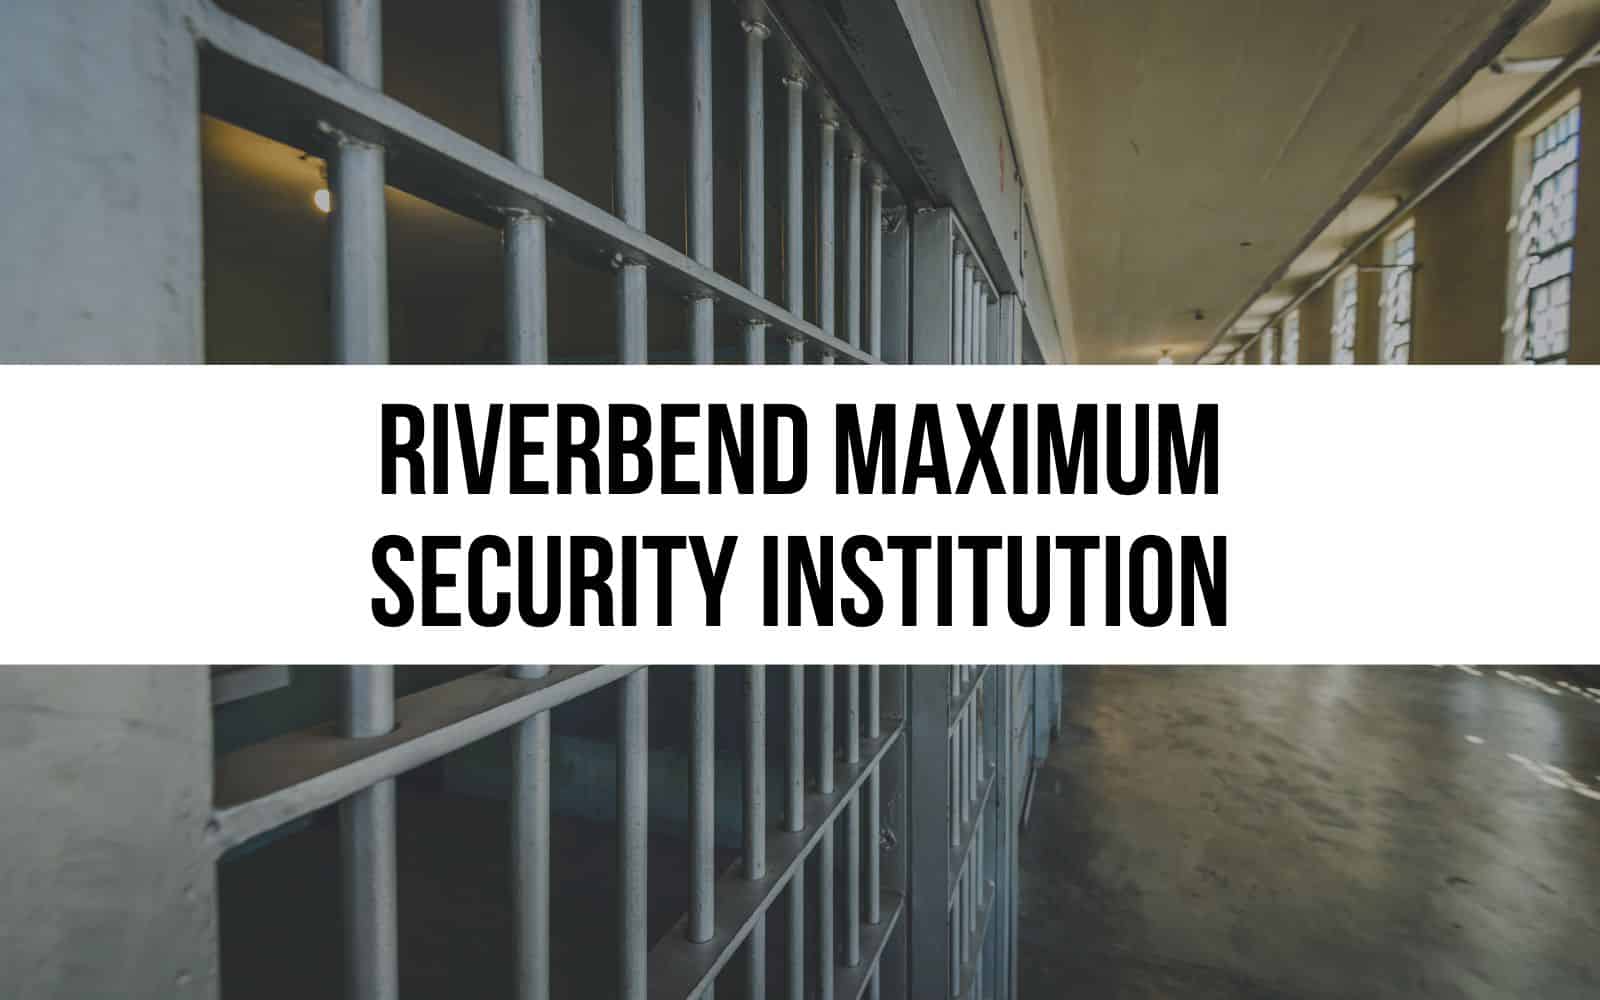 Riverbend Maximum Security Institution